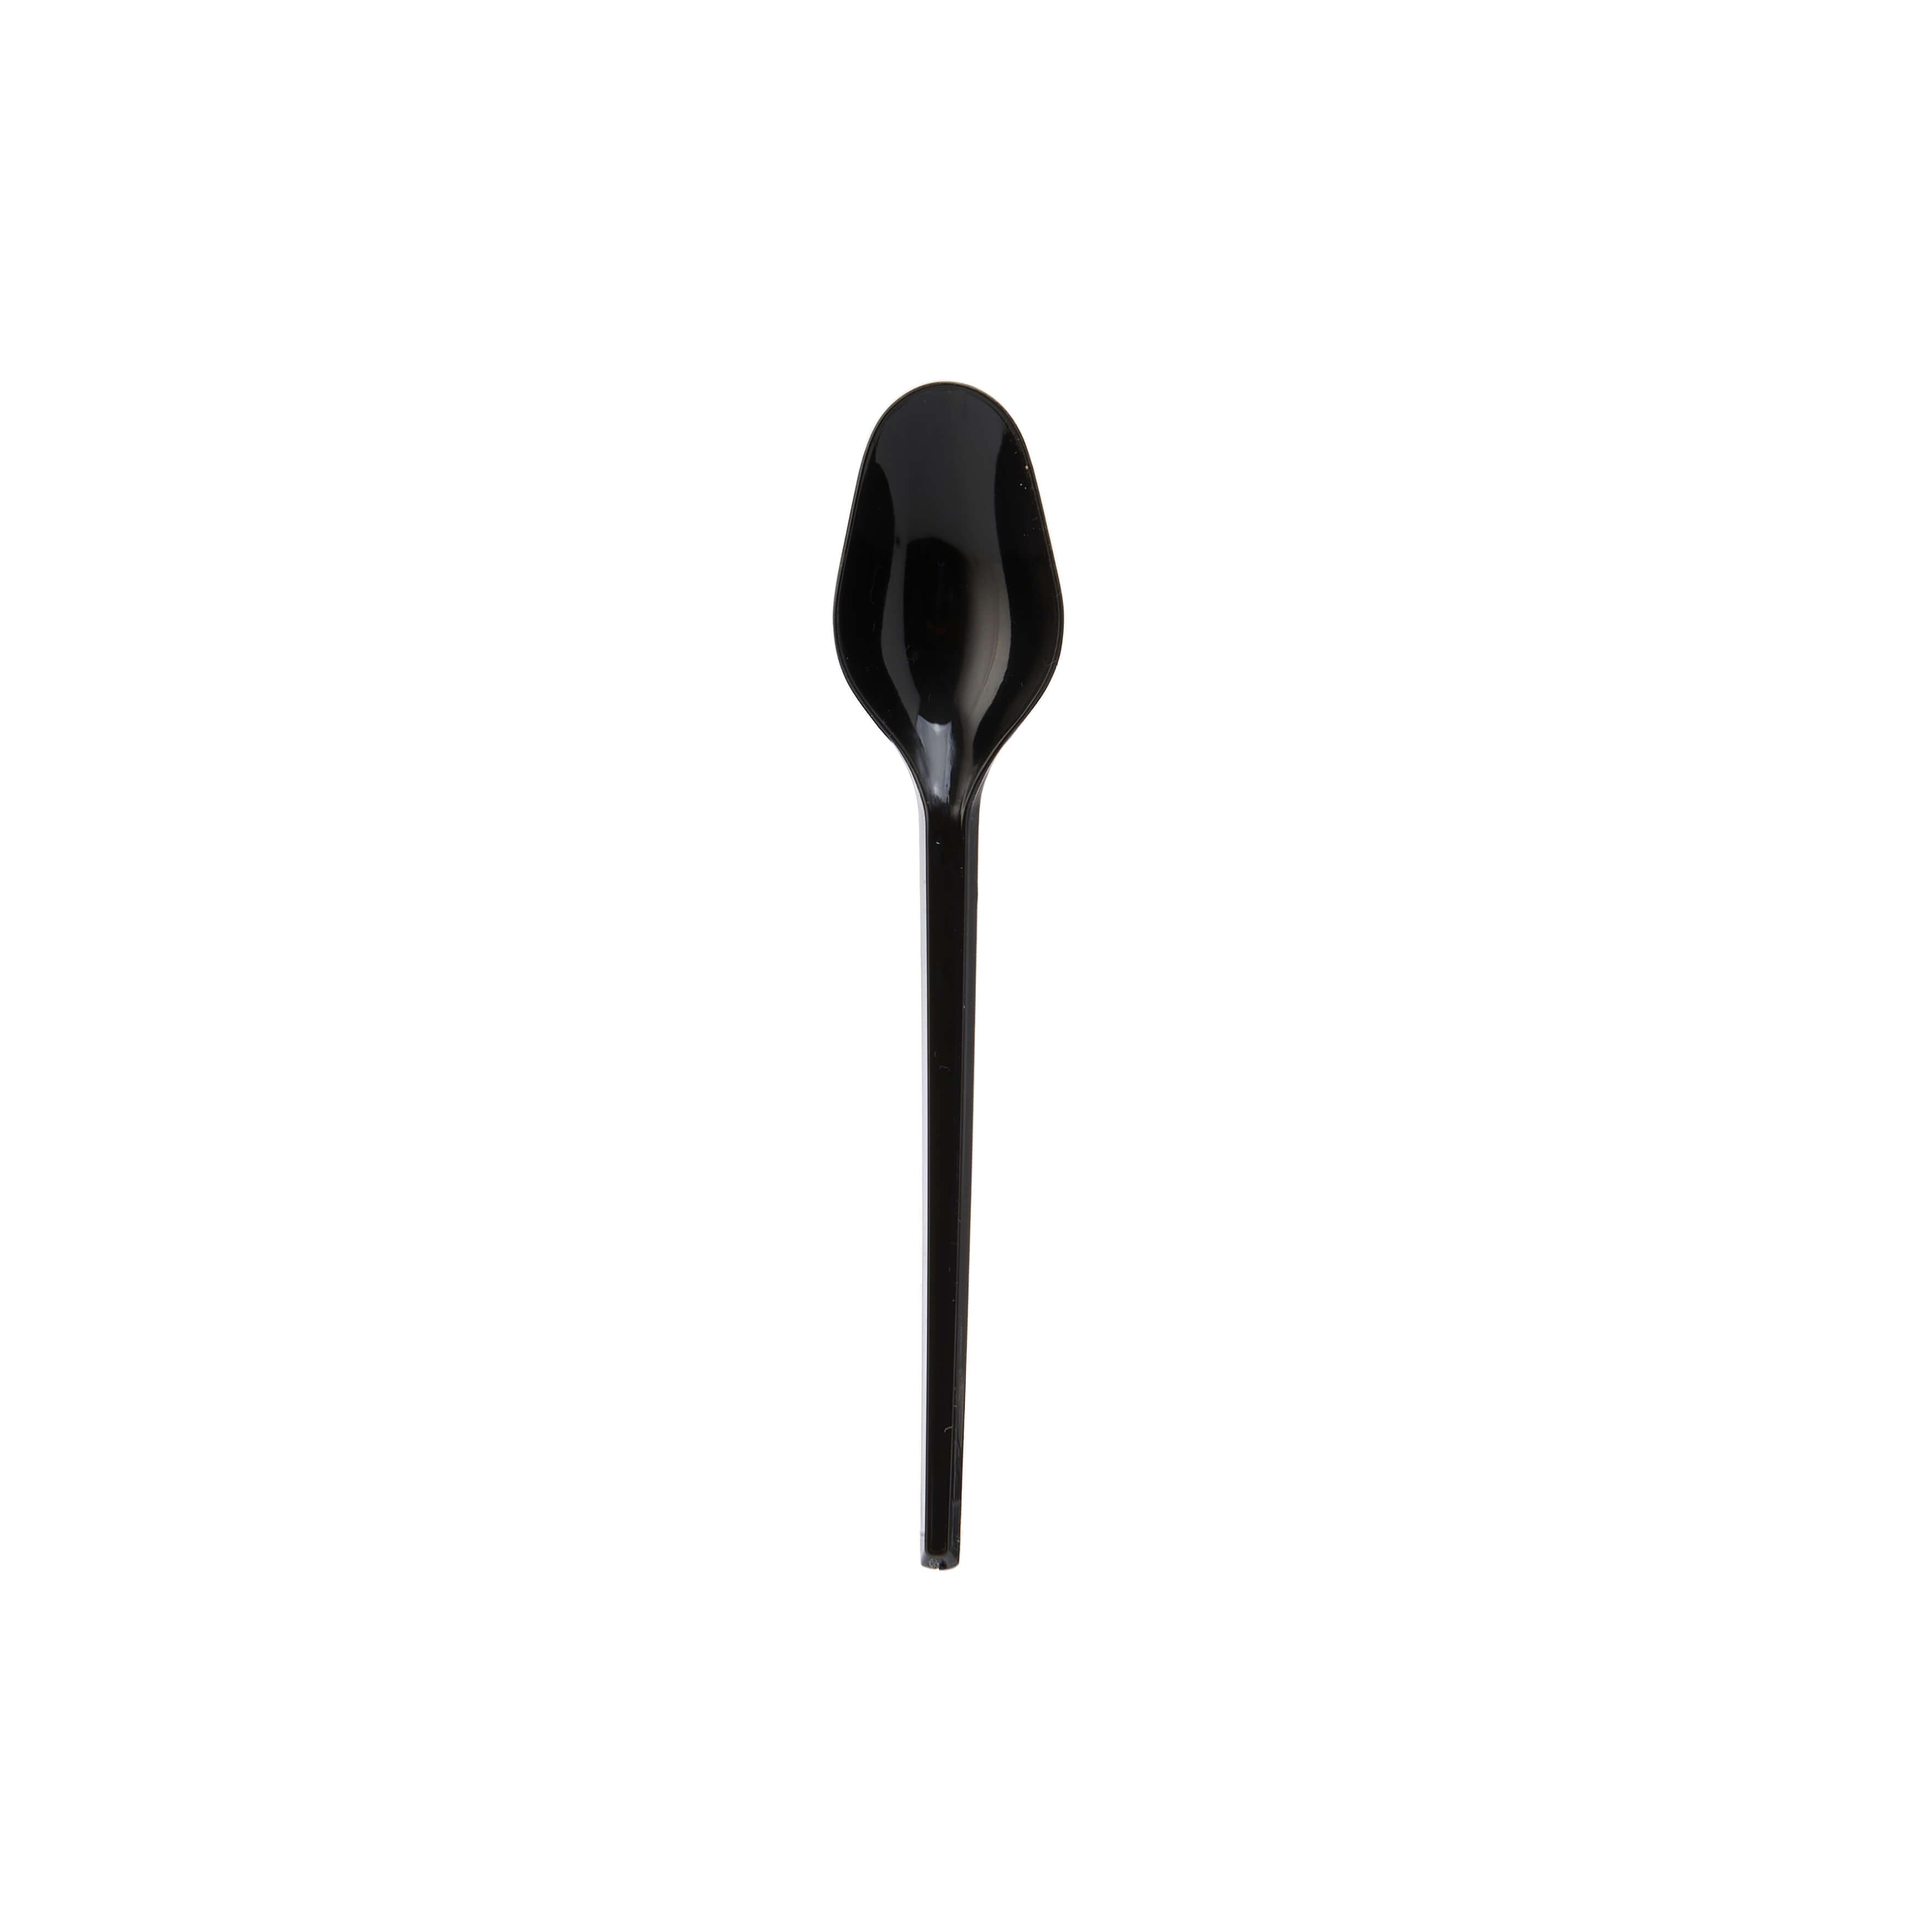 Disposable black teaspoon - Hotpack Global